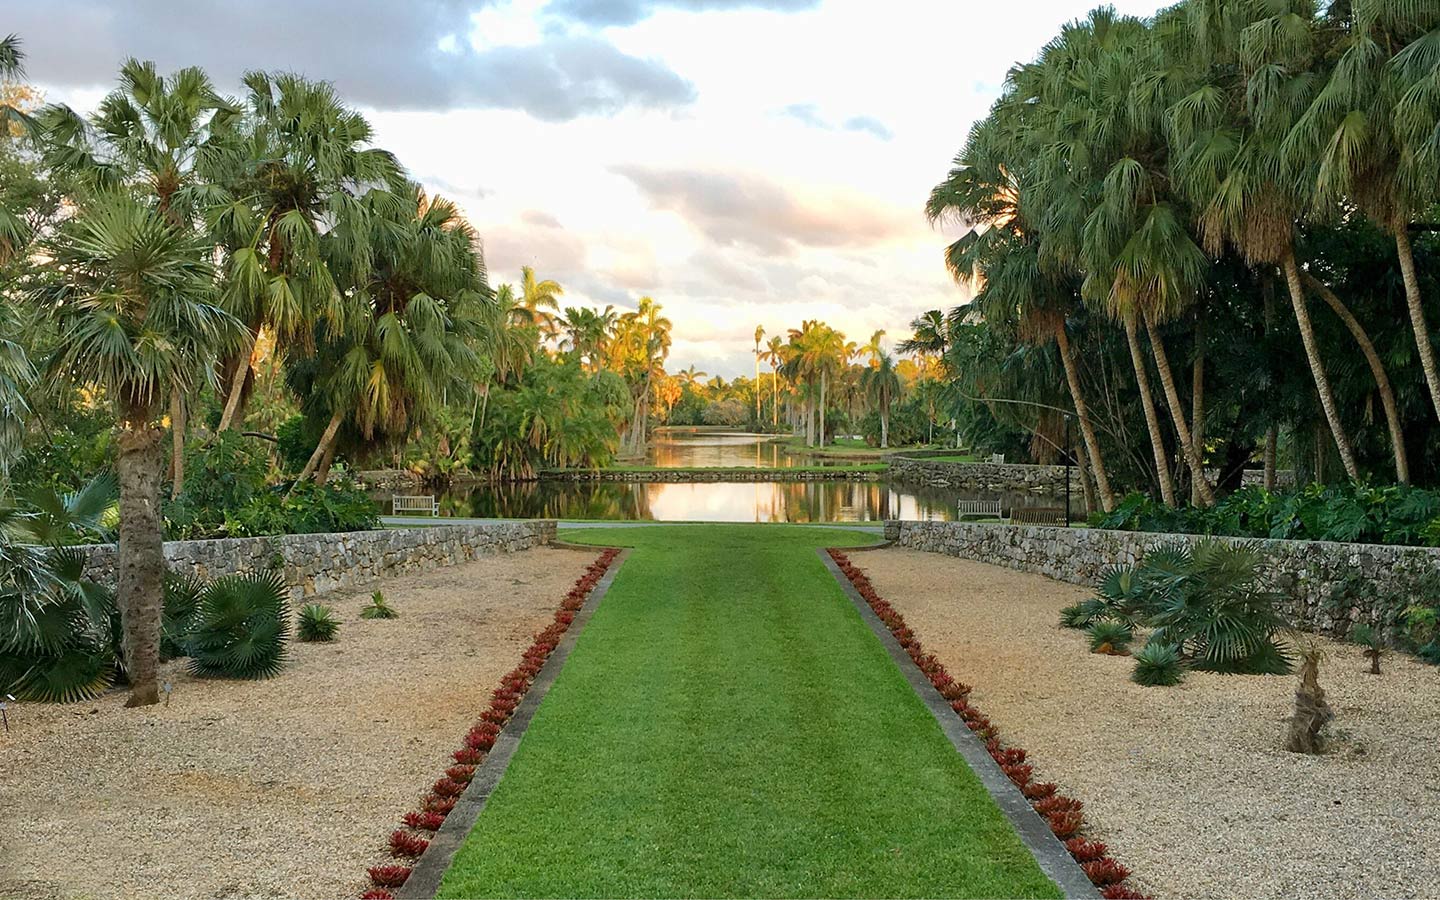 Garden and ponds in Fairchild Tropical Botanic Garden